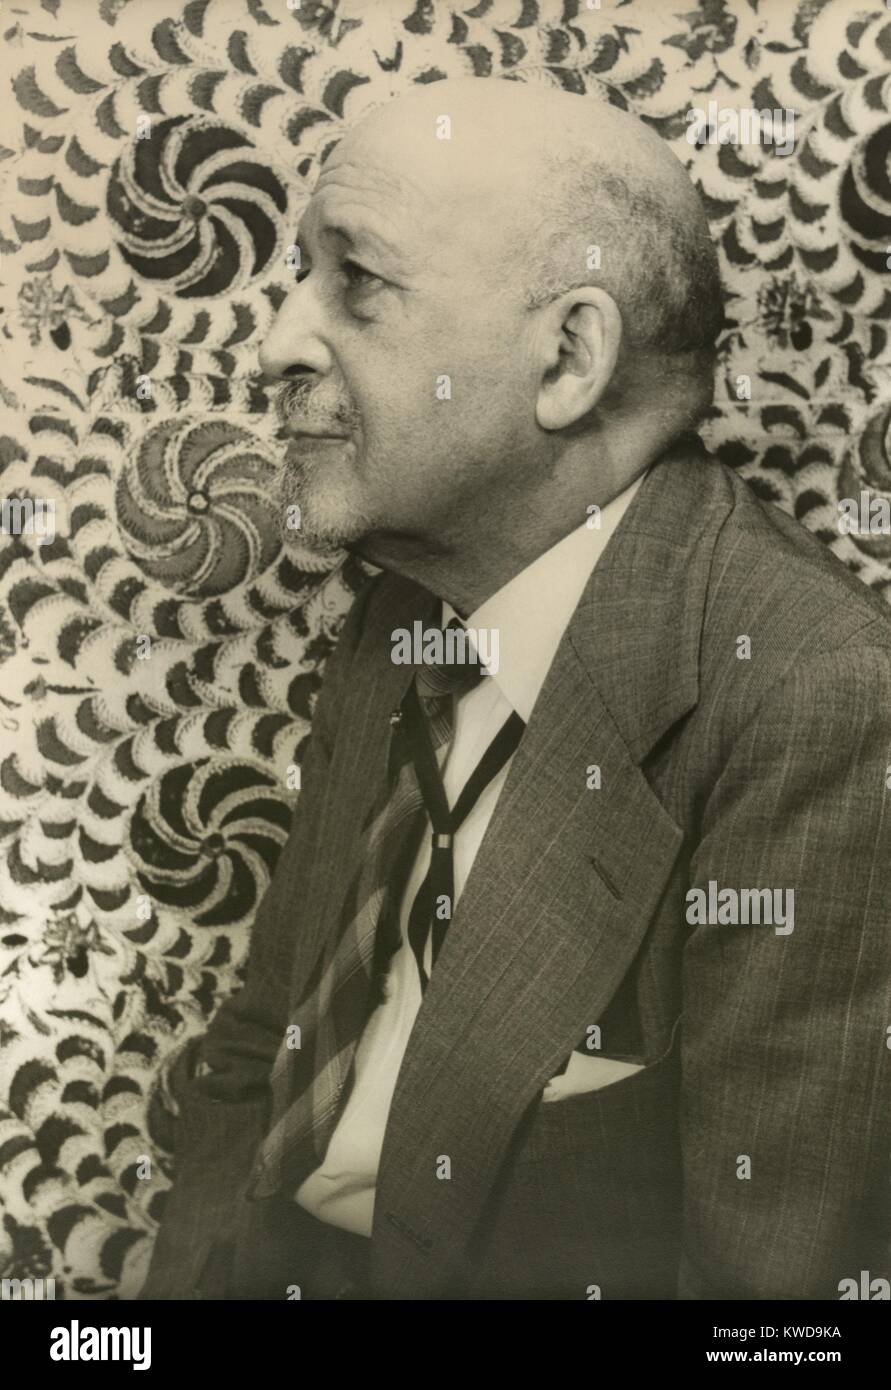 Le Dr W.E.B. Du Bois, juillet 1946 portrait par Carl Van Vechten. À l'âge de 79 ans, il a continué à susciter la controverse. Le ministère de la Justice de poursuites du bois en 1951 en raison de ses activités politiques de gauche (BSLOC   2016 10 209) Banque D'Images